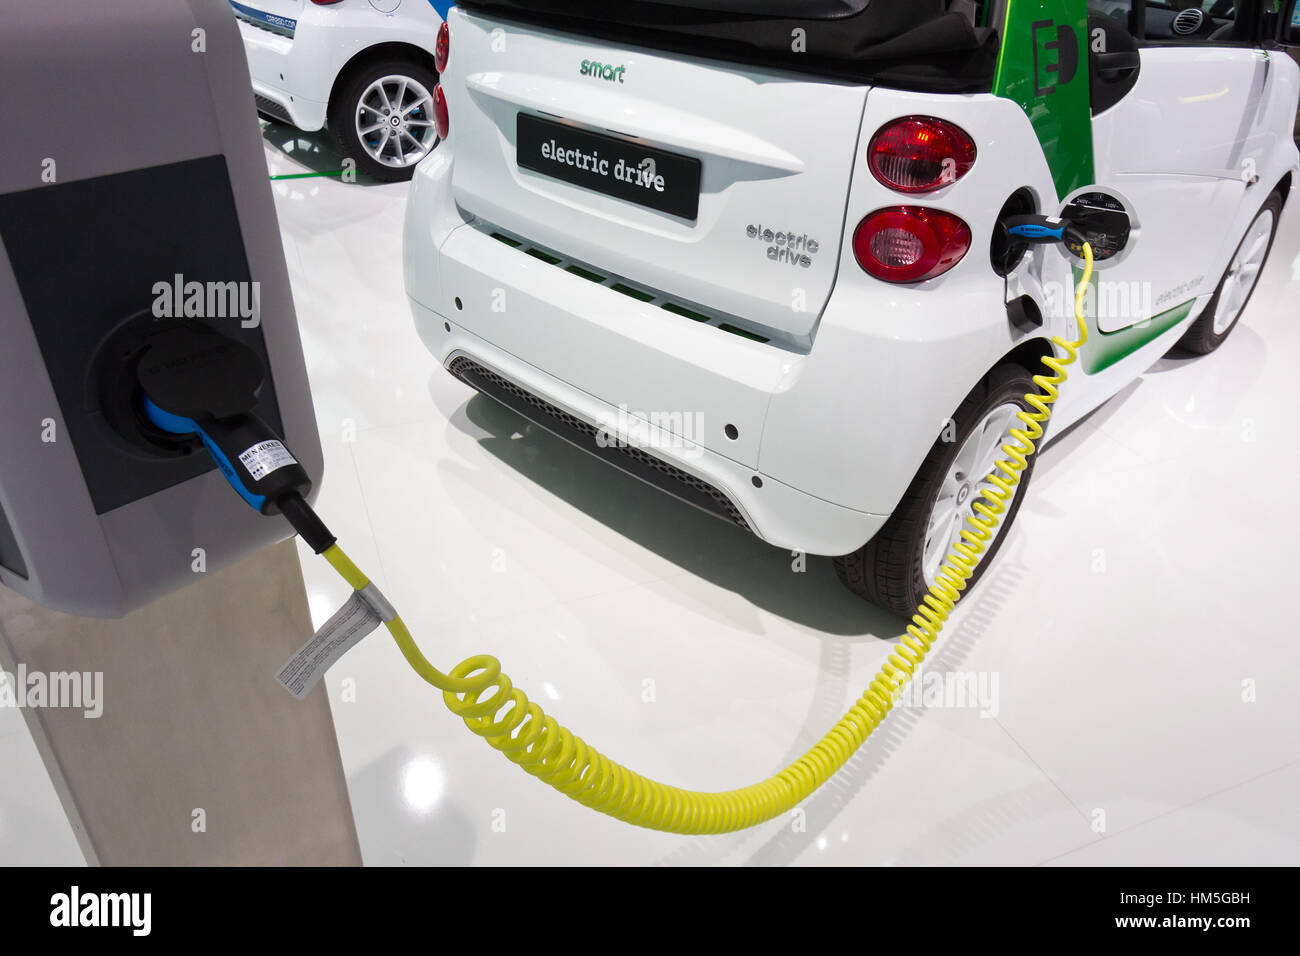 FRANKFURT, Deutschland - SEP 13: Aufladen ein Smart Electric Drive auf der IAA motor Show am Sep 13, 2013 in Frankfurt am Main. Mehr als 1,000 Aussteller aus 35 co Stockfoto